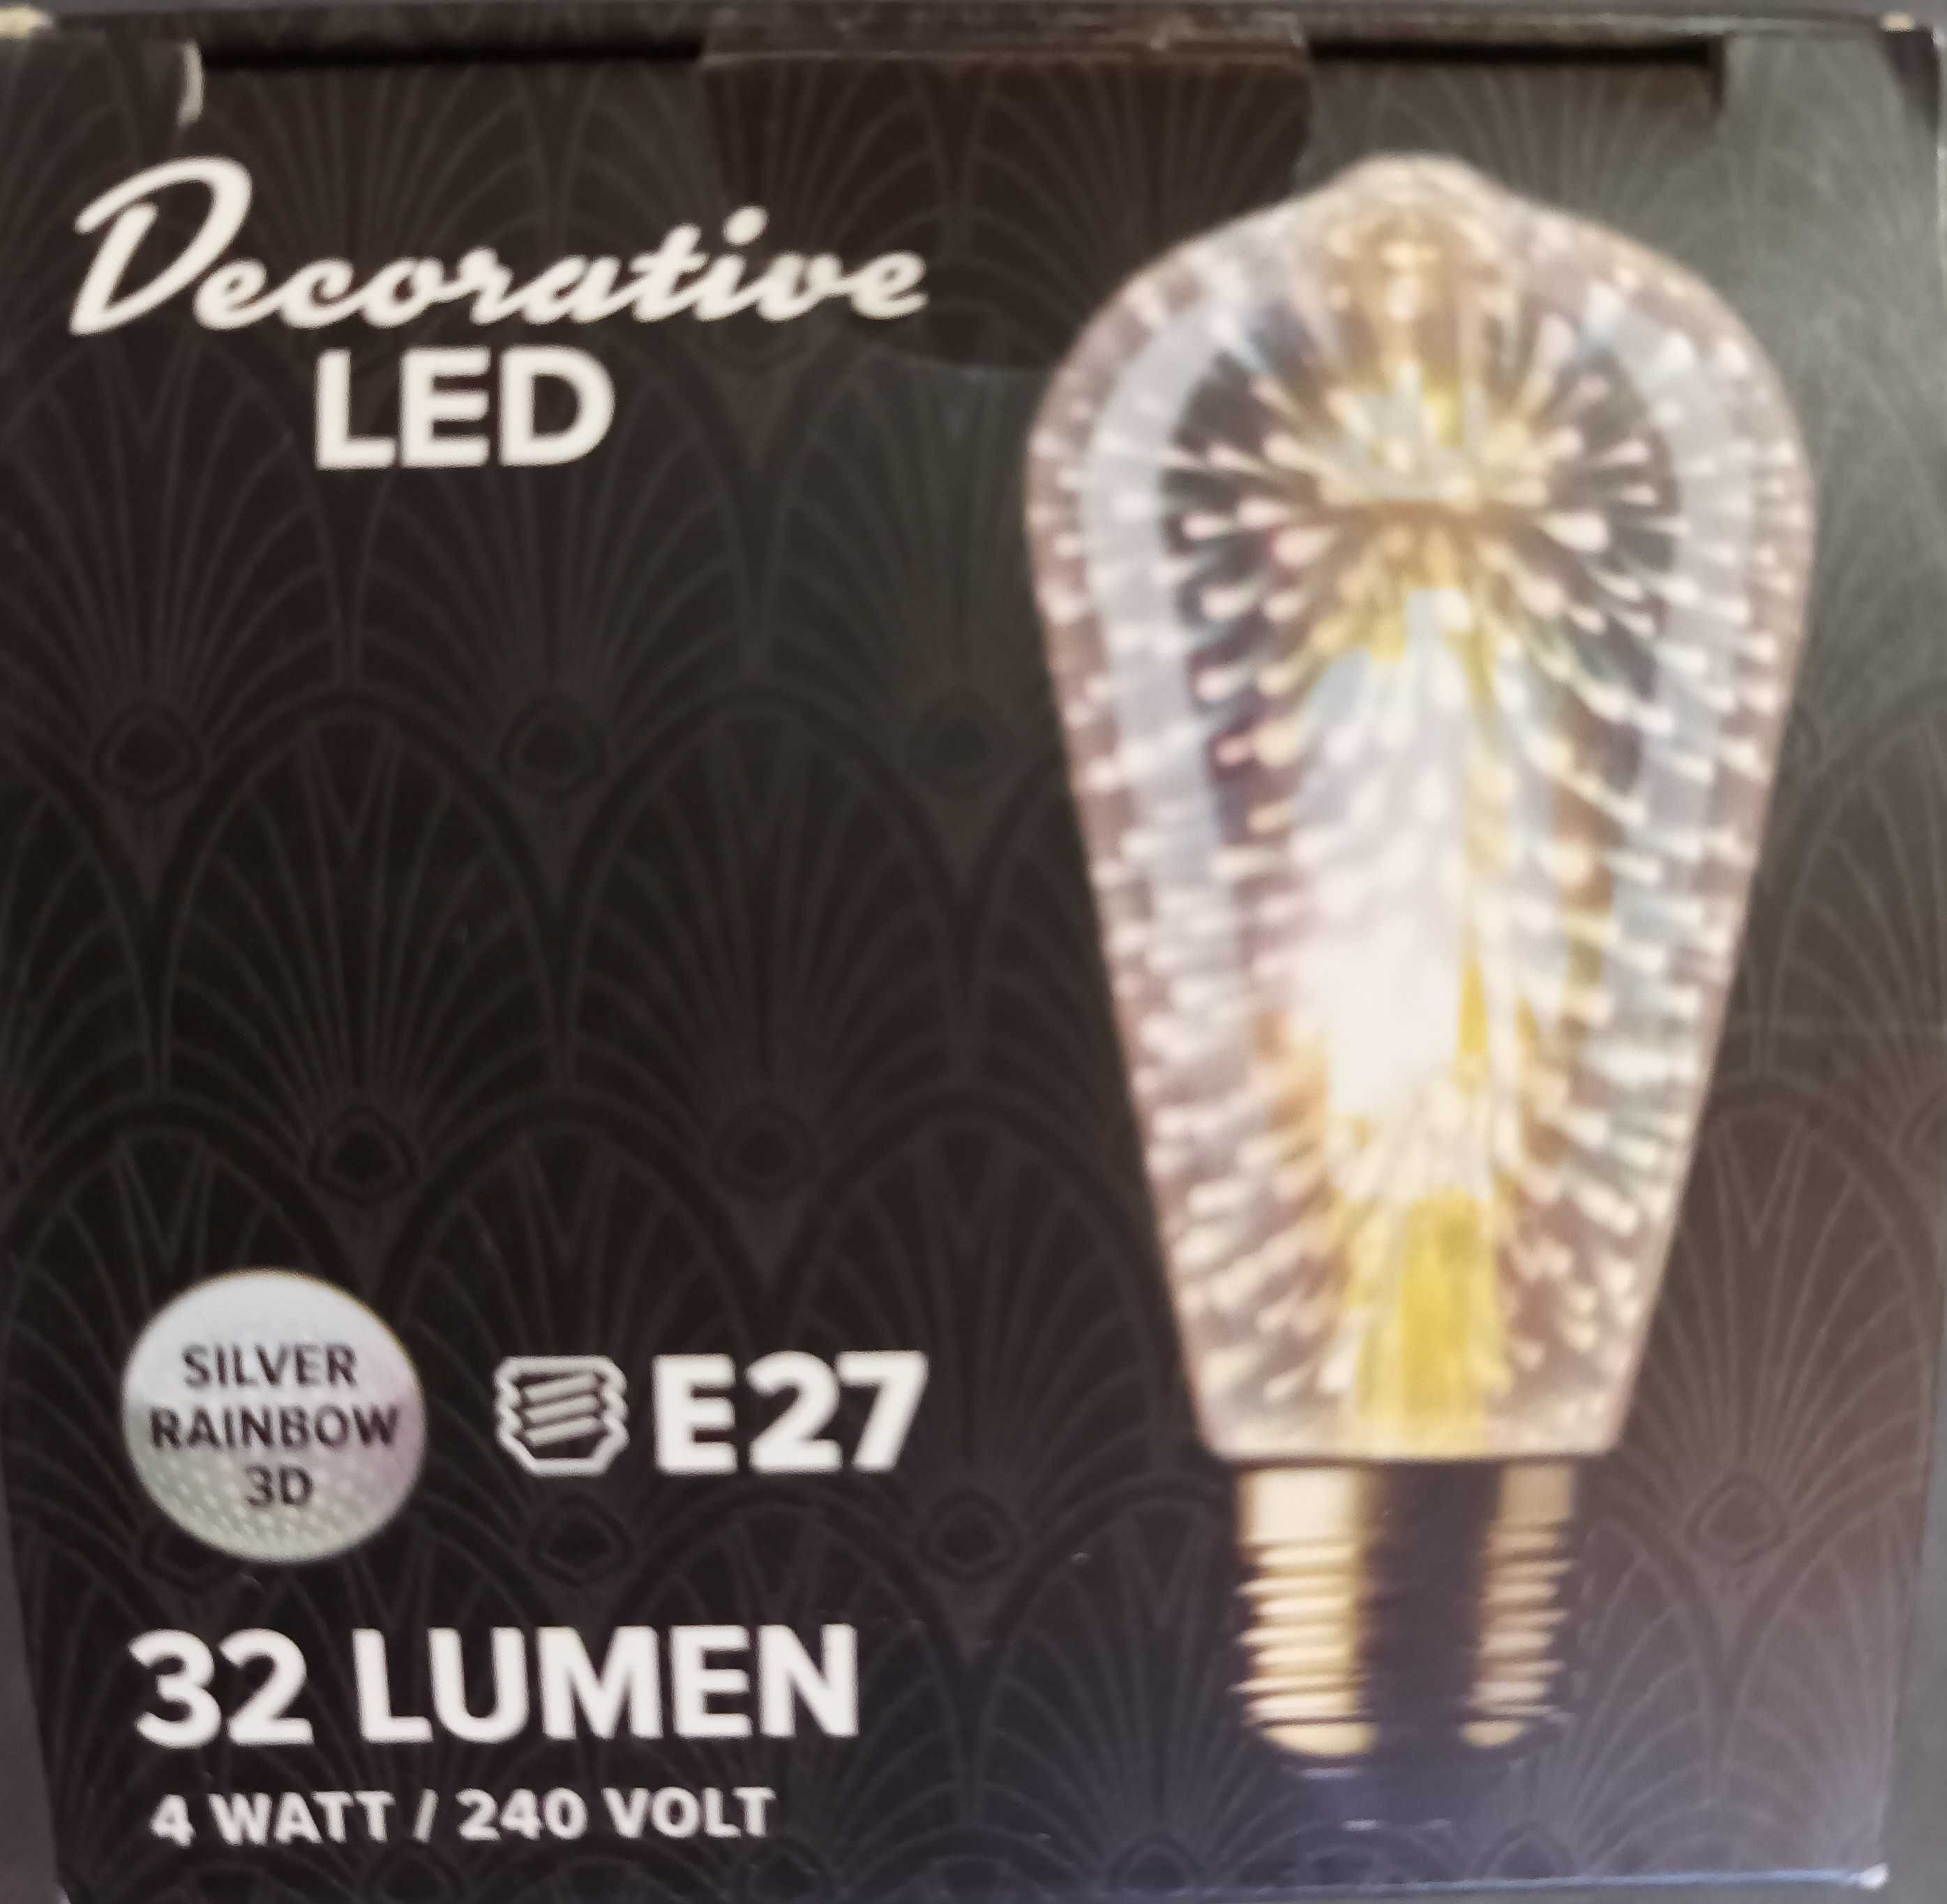 Żarówki dekoracyjne LED srebrna tęcza 3D 32Lumeny